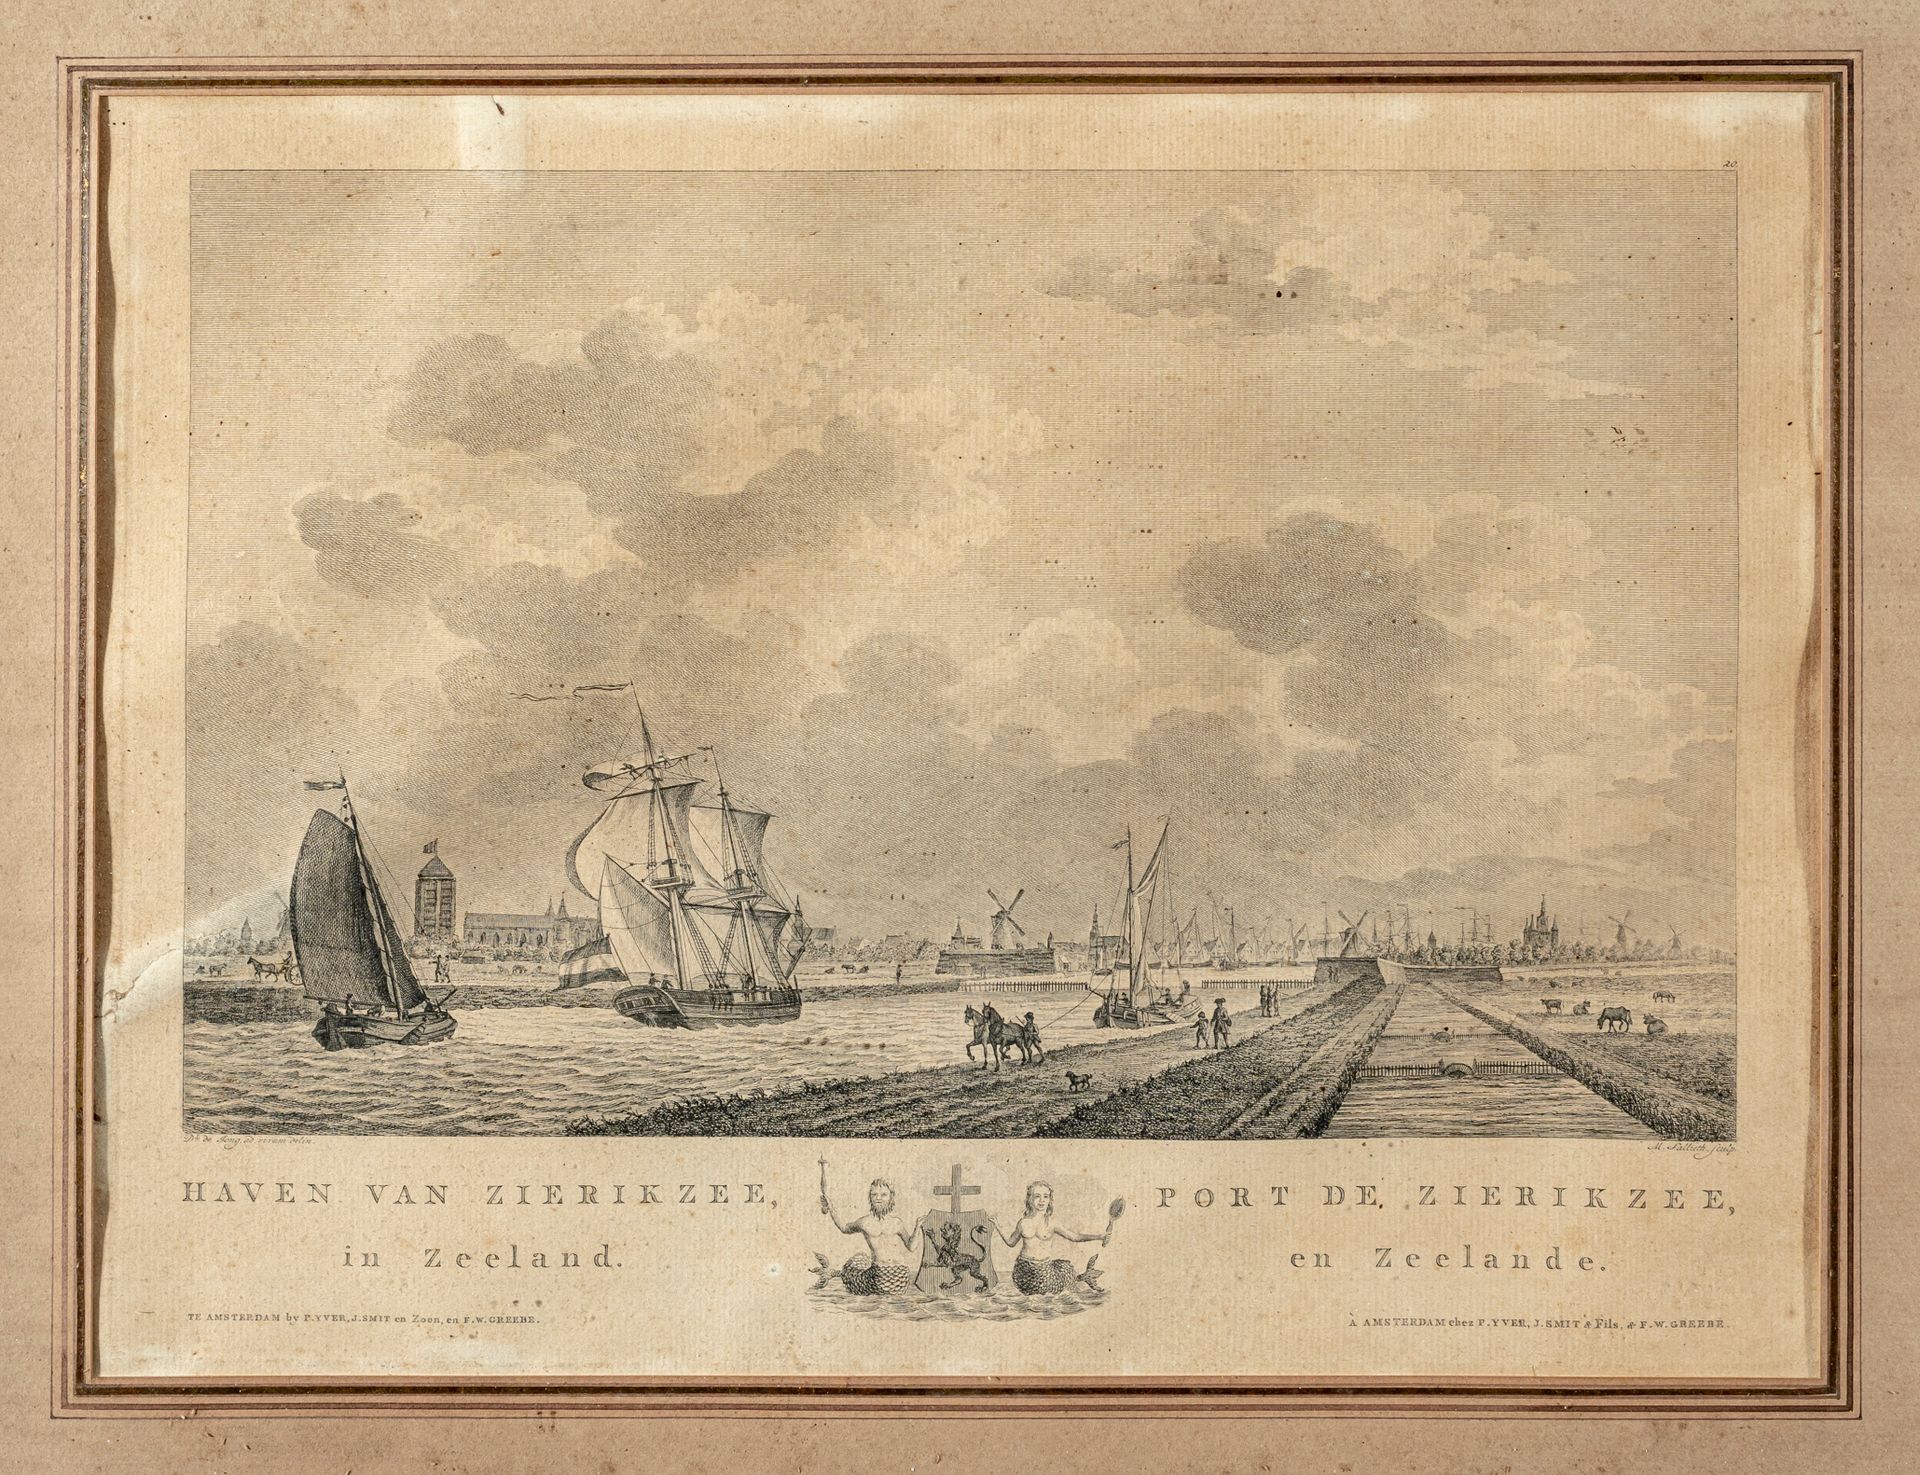 Null Mathias de Sallieth (1741-1791) d'après de Jong

Vues de ports

Suite de tr&hellip;